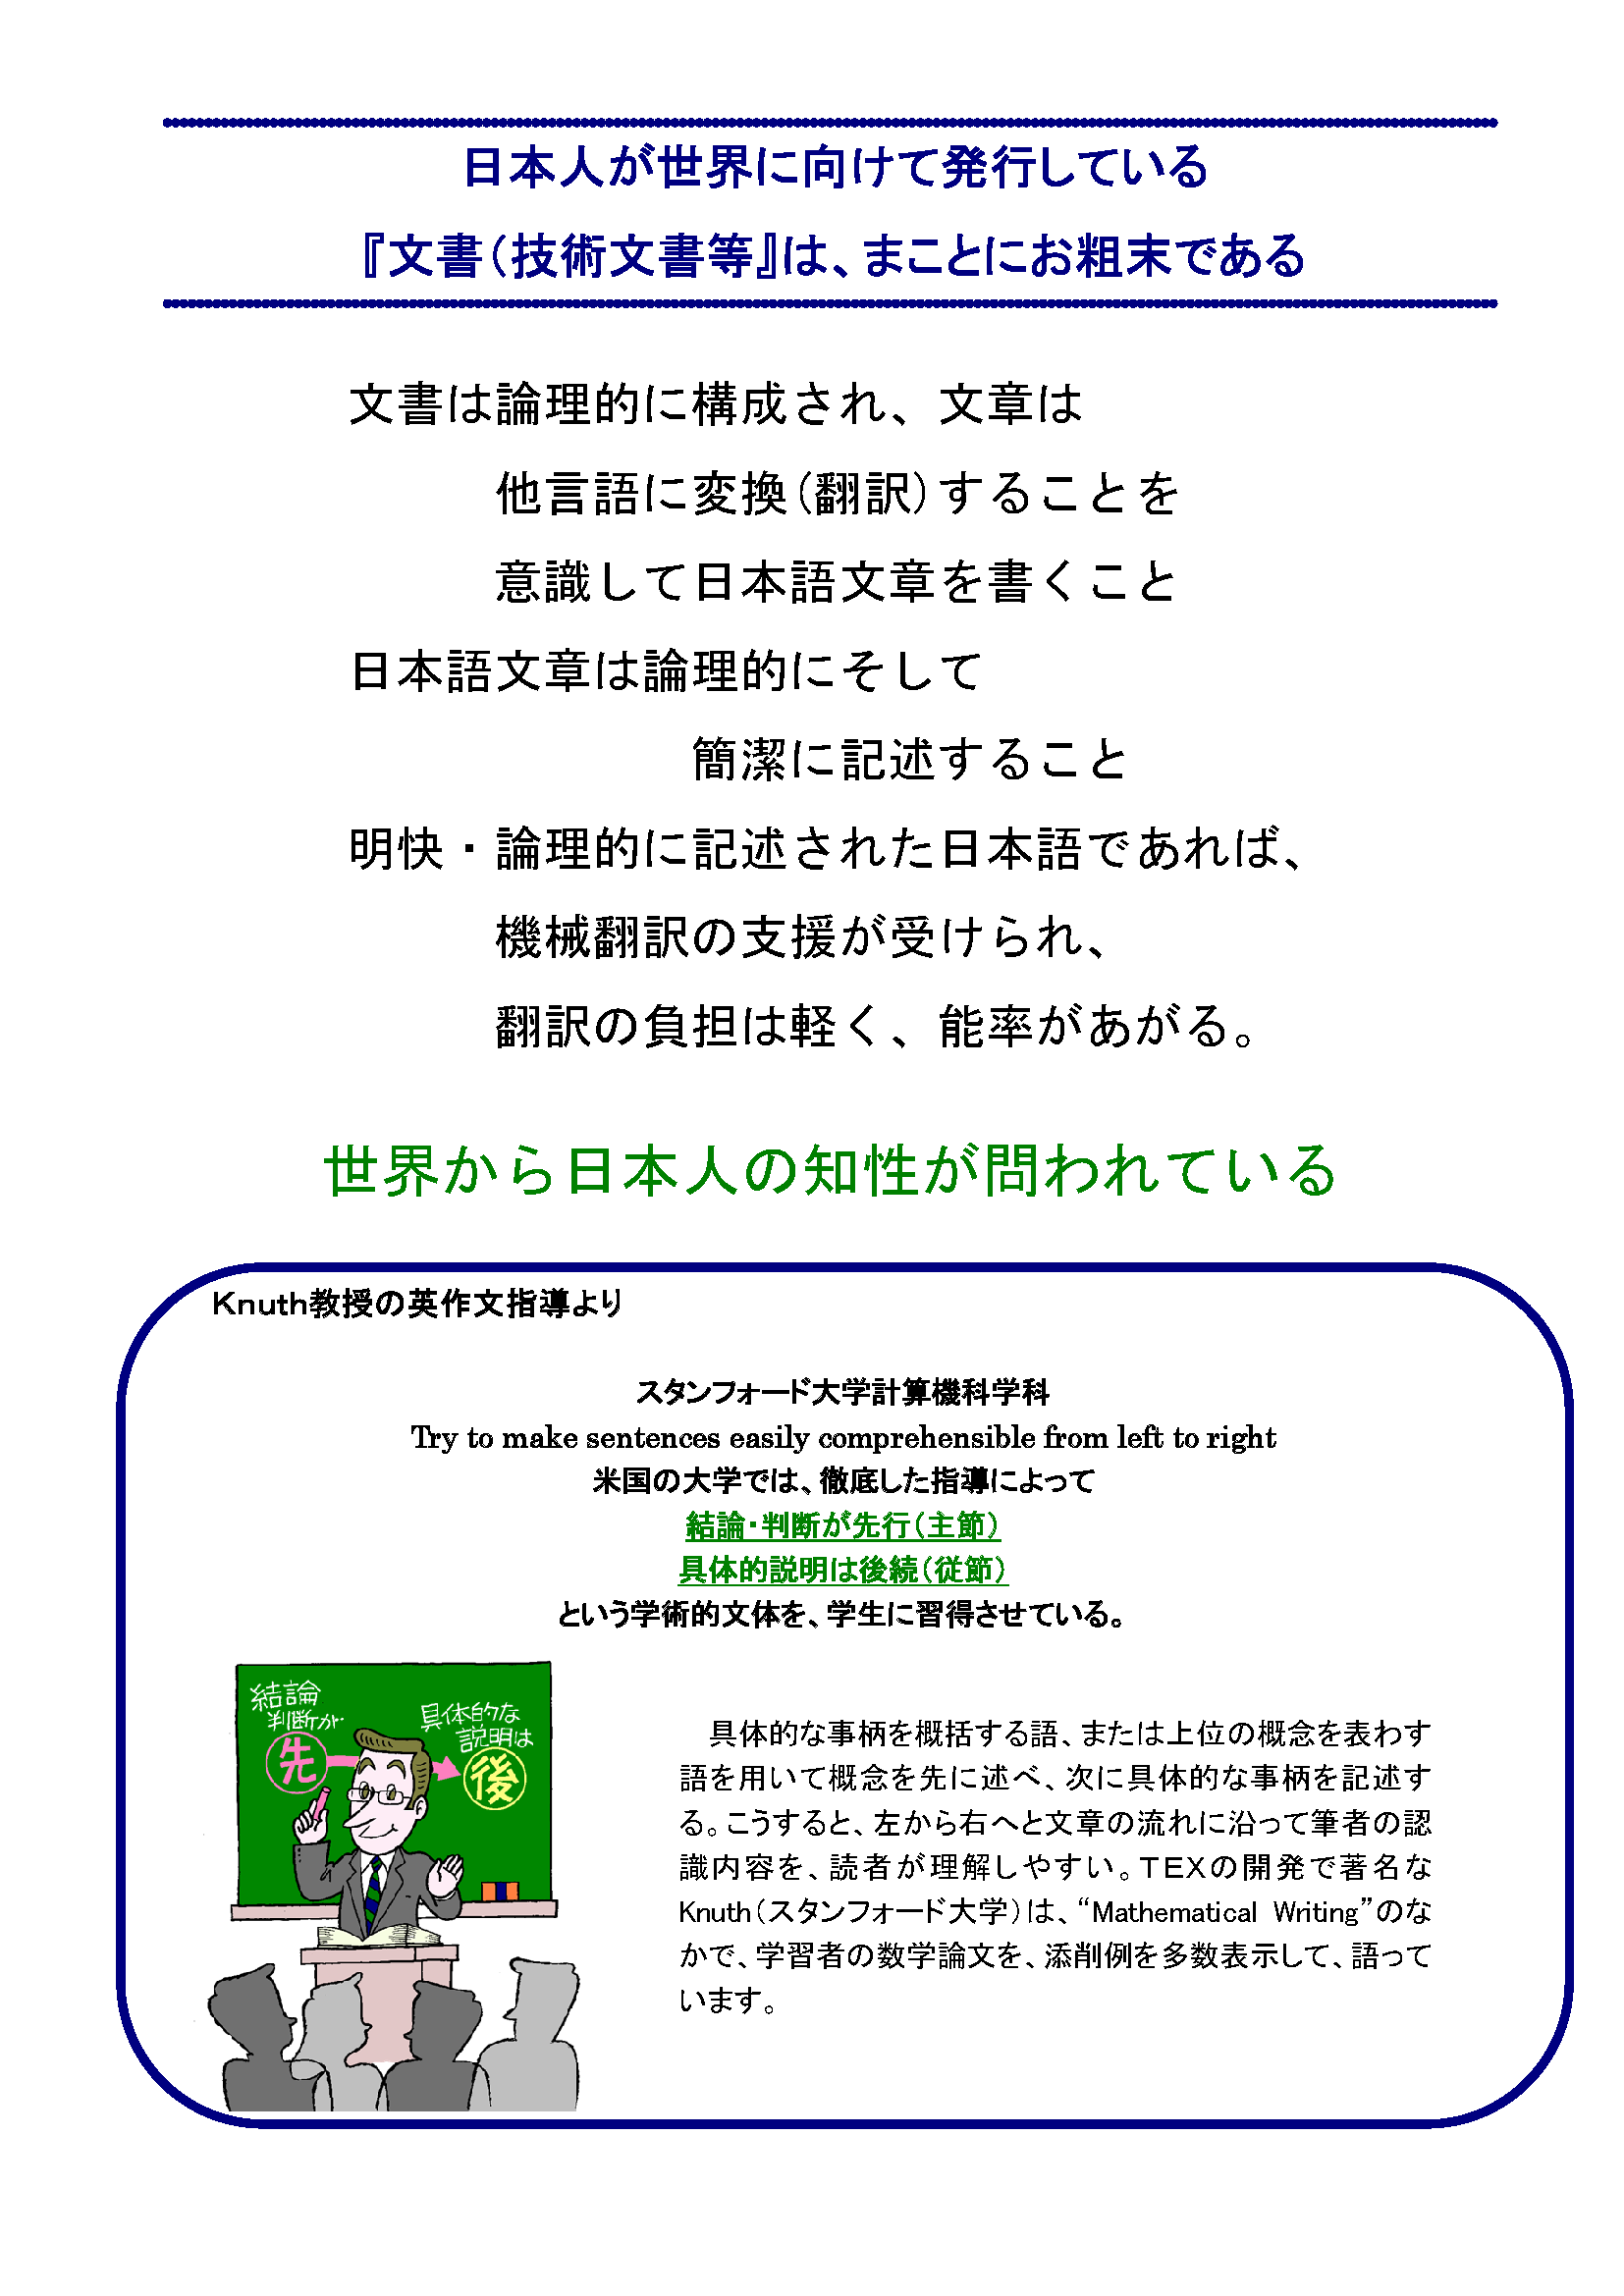 世界へ「物・事・考え」を伝える日本語講座_日本人が世界に向けて発行している「文書（技術文書等）」は、まことにお粗末である